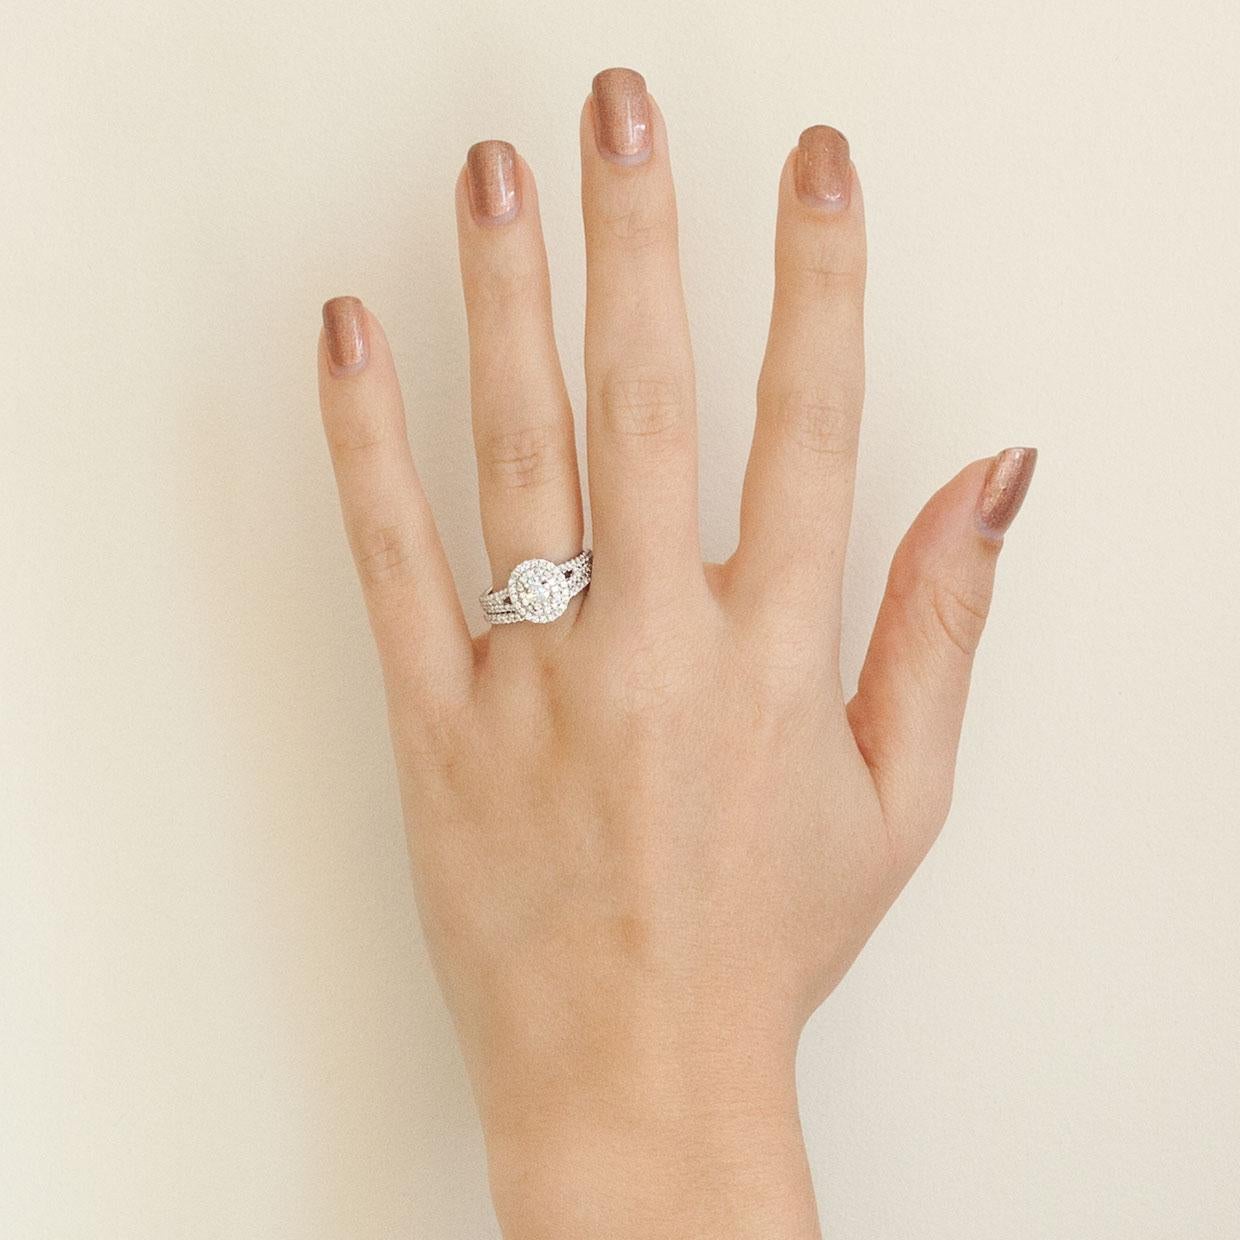 White Gold Oval Diamond Double Halo Engagement Ring Wedding Set 1